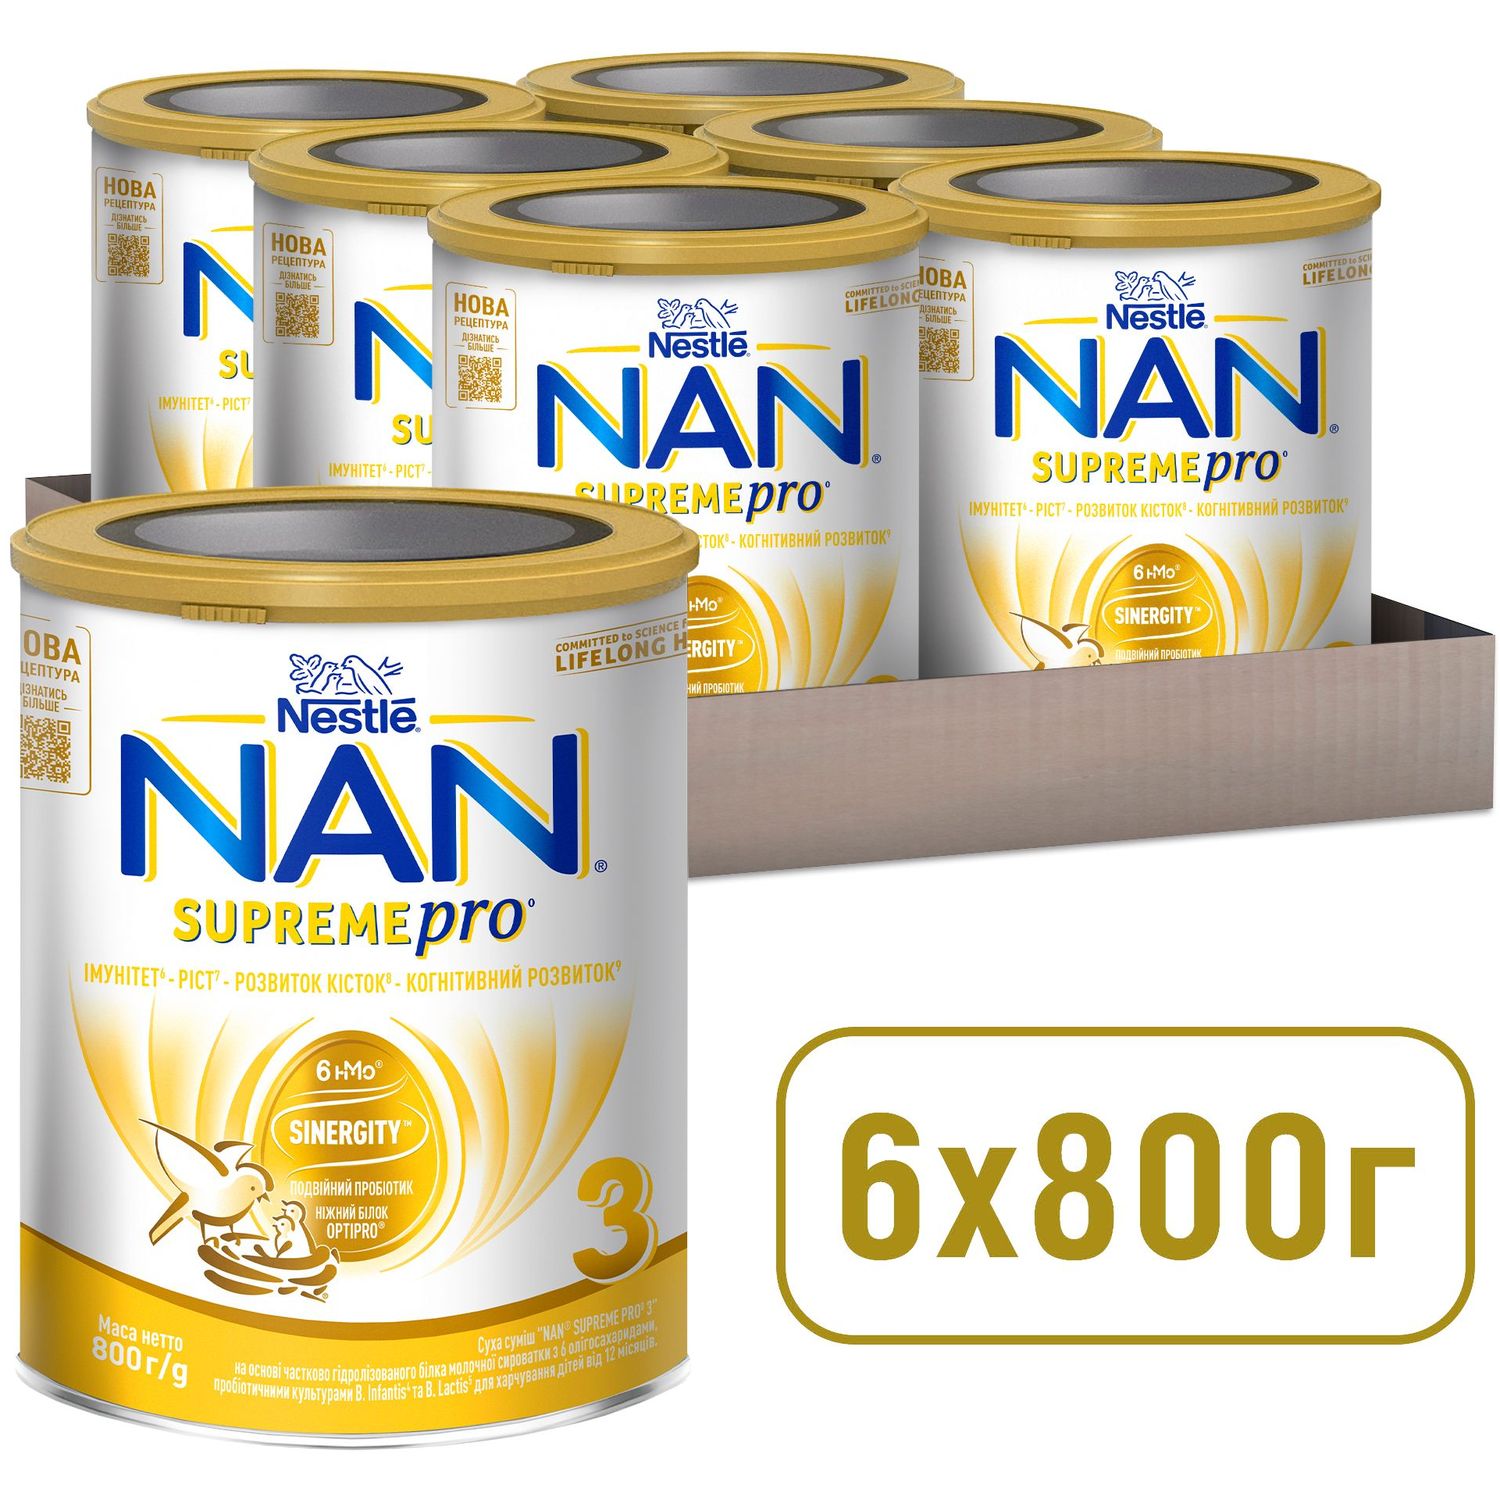 Сухая смесь NAN 3 Supreme Pro с 6 олигосахаридами и двойным пробиотиком для питания детей от 12 месяцев 800 г - фото 10